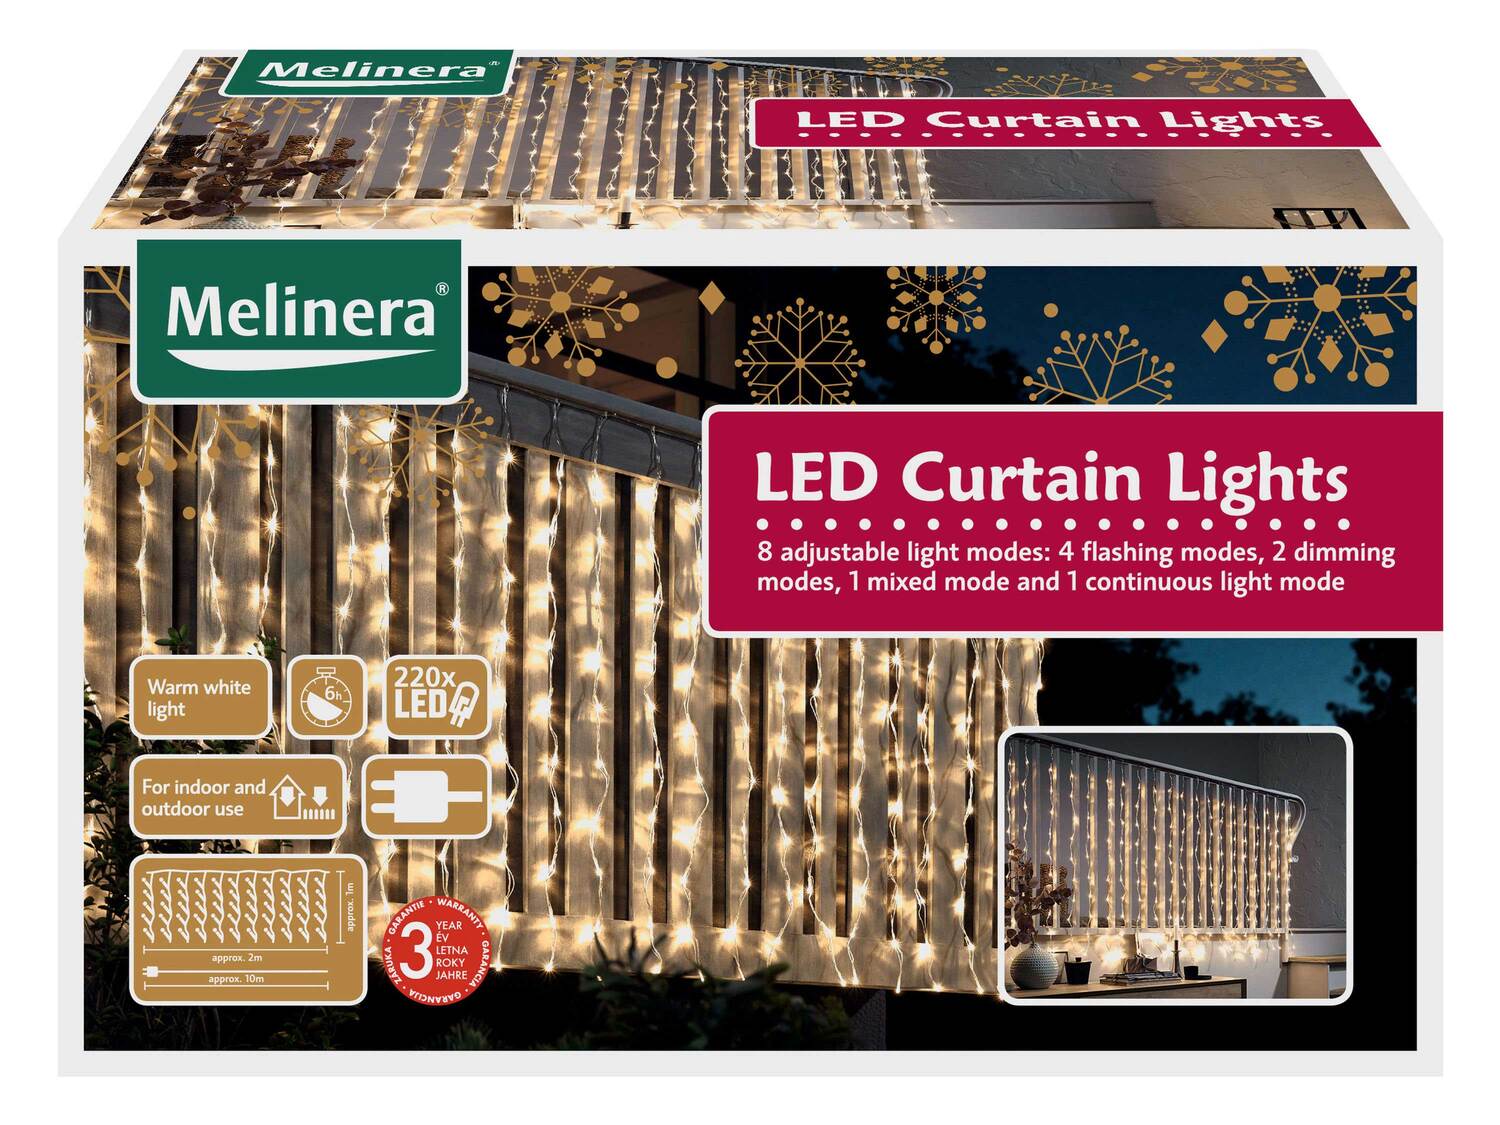 Kurtyna świetlna LED Melinera, cena 59,90 PLN 
do wyboru ciepłe lub zimne białe ...